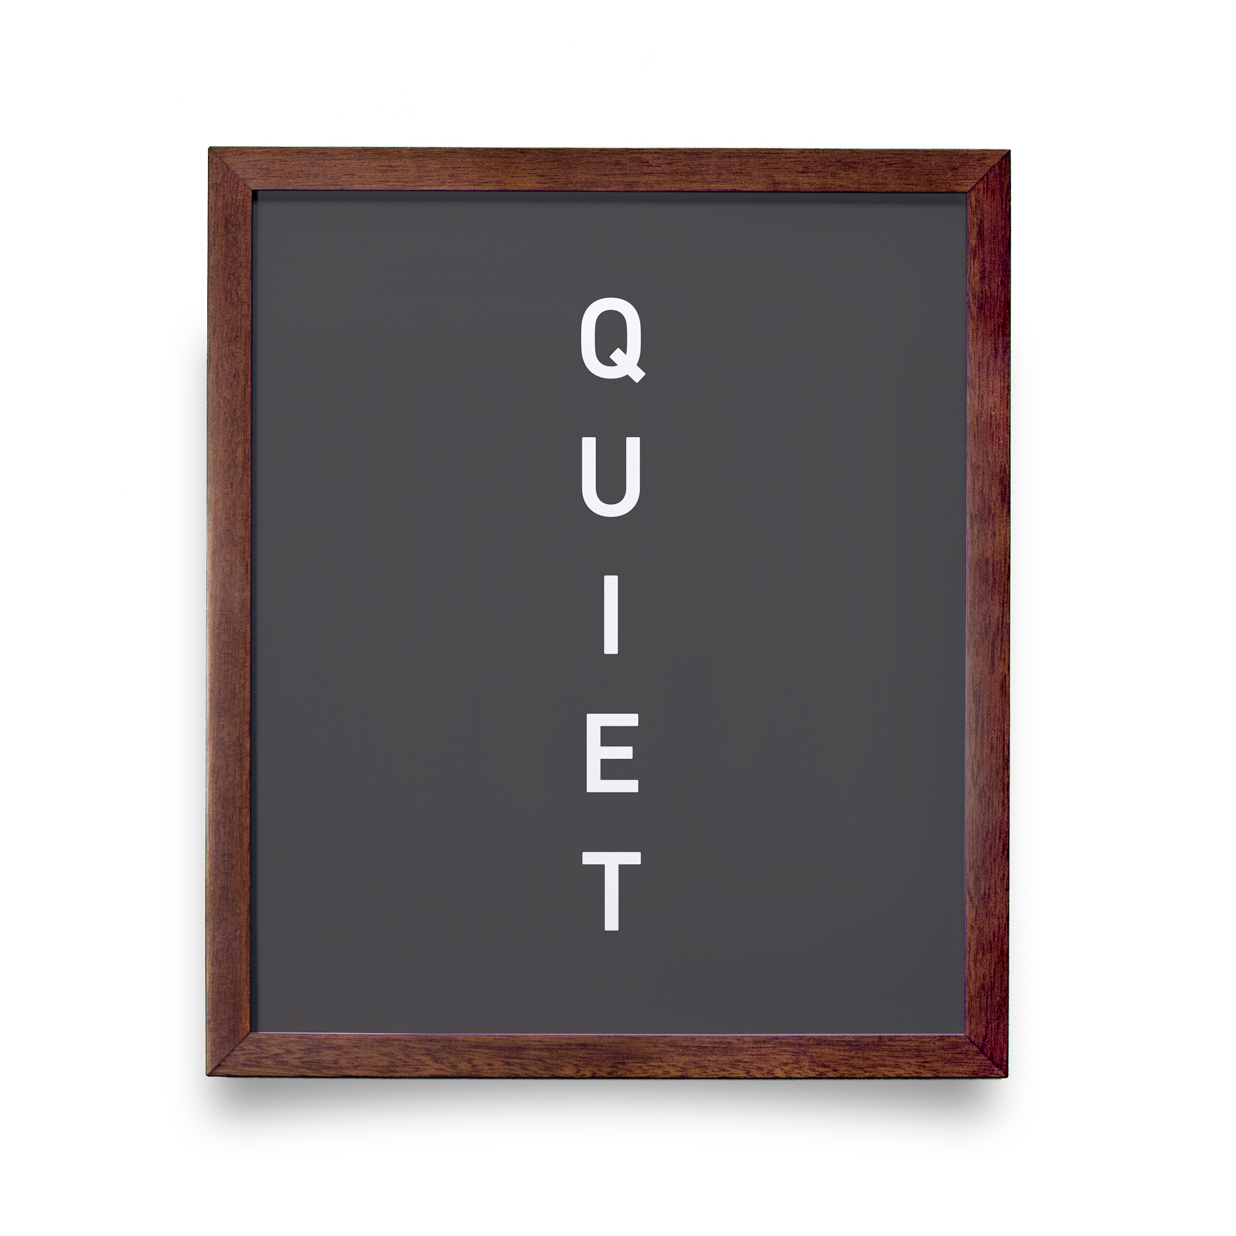 Quiet (Gray)